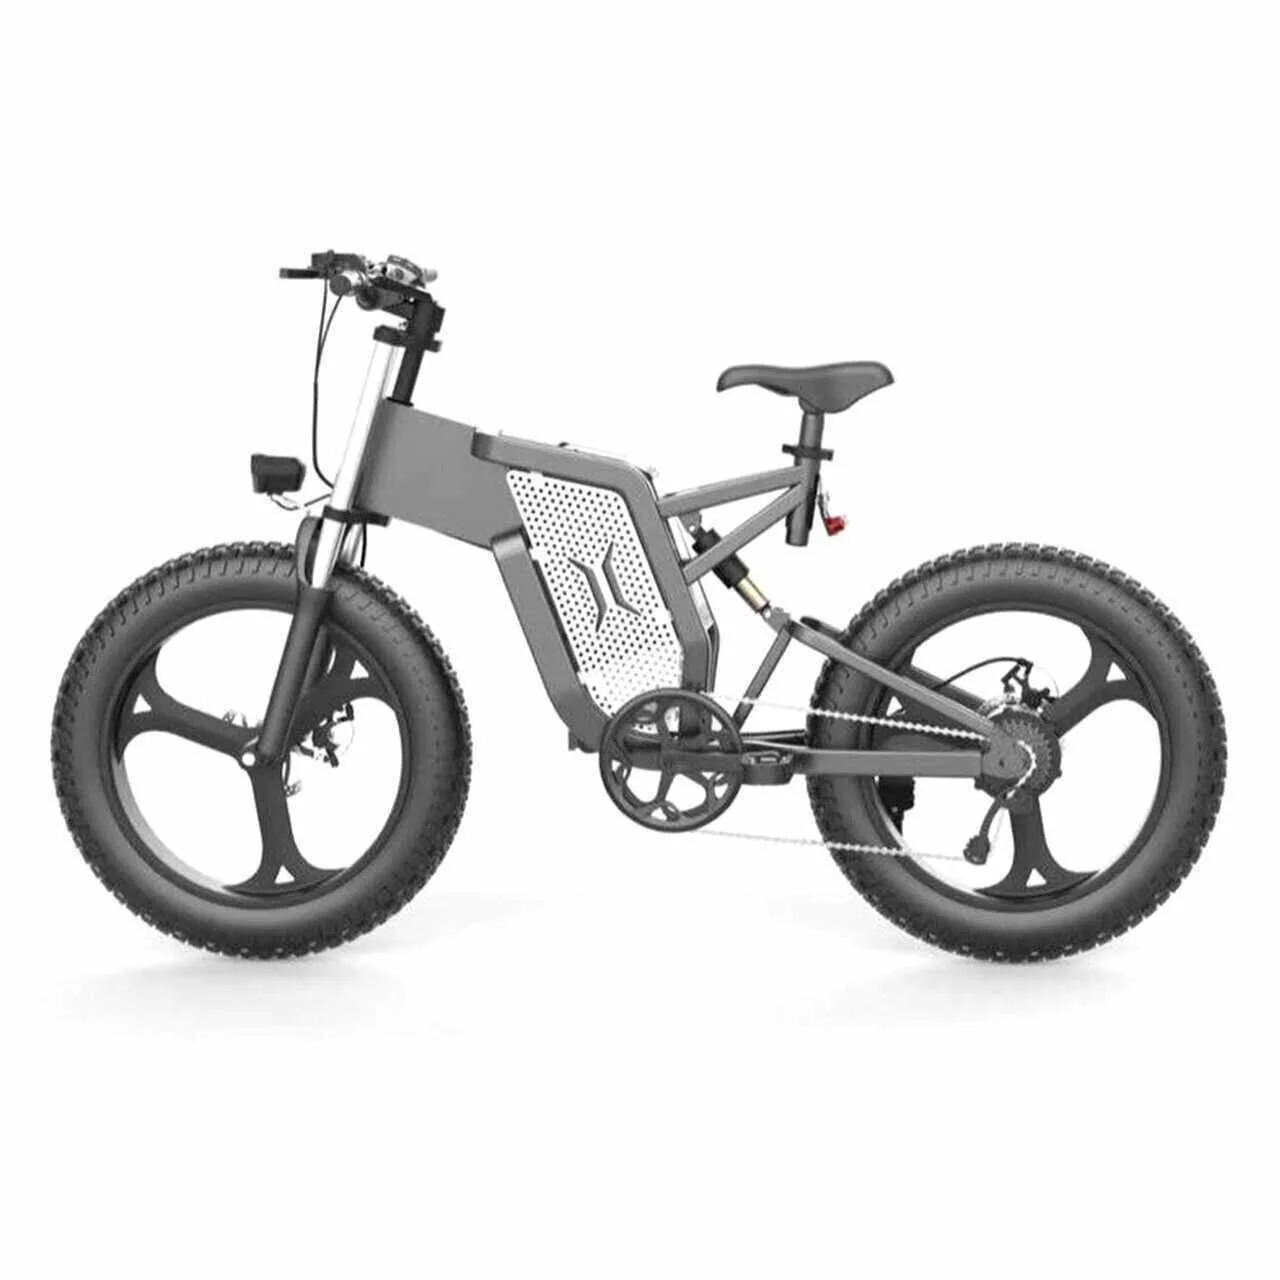 Электровелосипед Syccyba Impulse 1000W (на литых дисках)